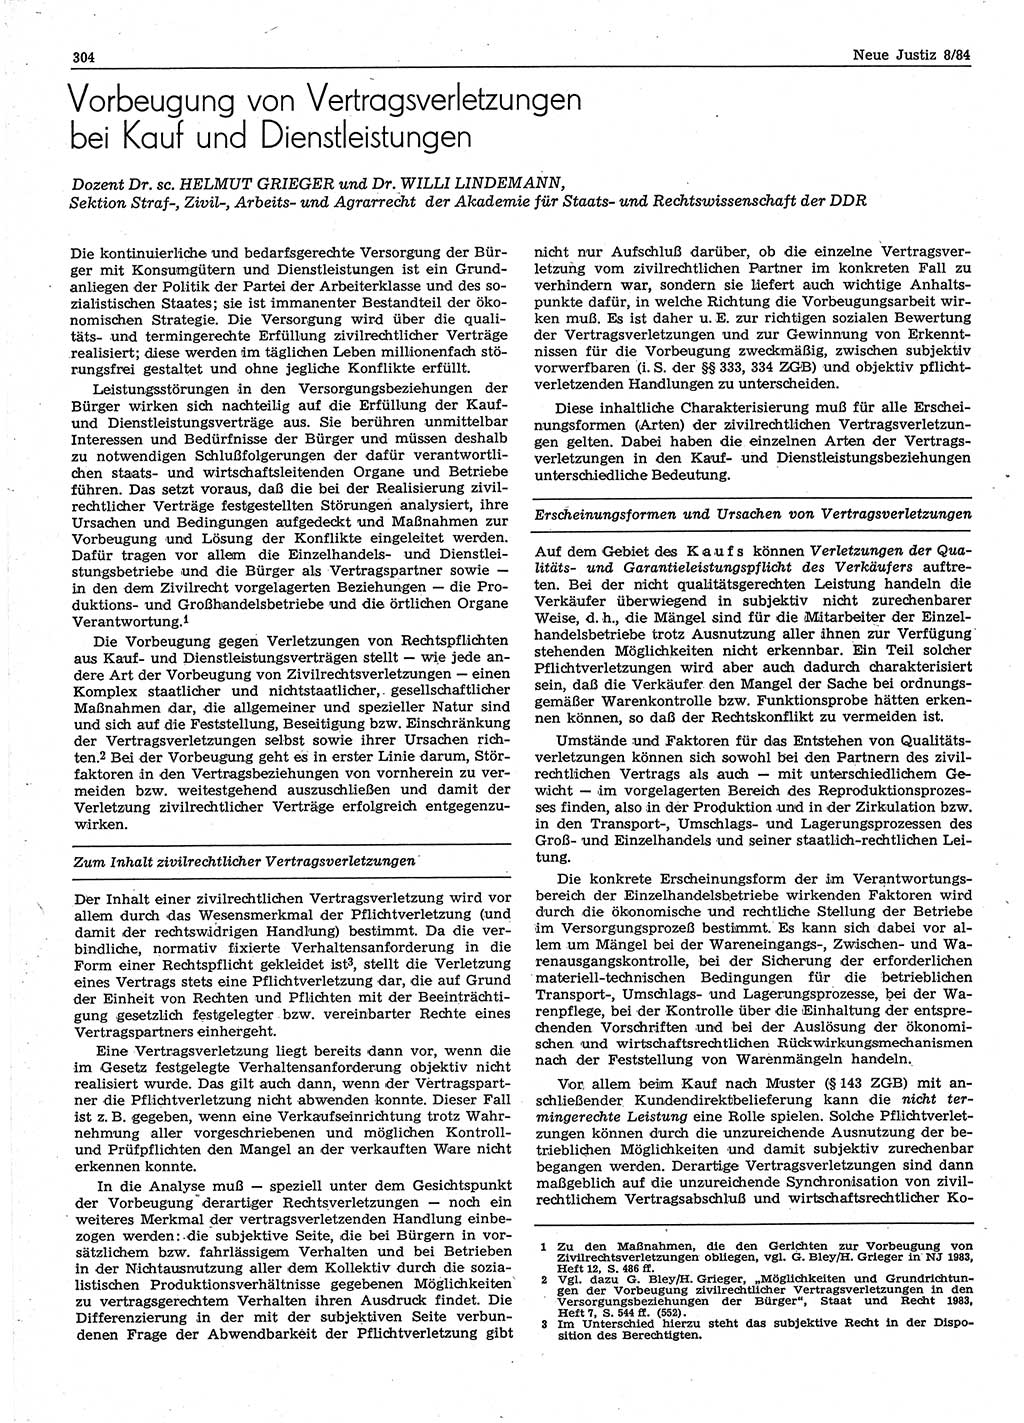 Neue Justiz (NJ), Zeitschrift für sozialistisches Recht und Gesetzlichkeit [Deutsche Demokratische Republik (DDR)], 38. Jahrgang 1984, Seite 304 (NJ DDR 1984, S. 304)